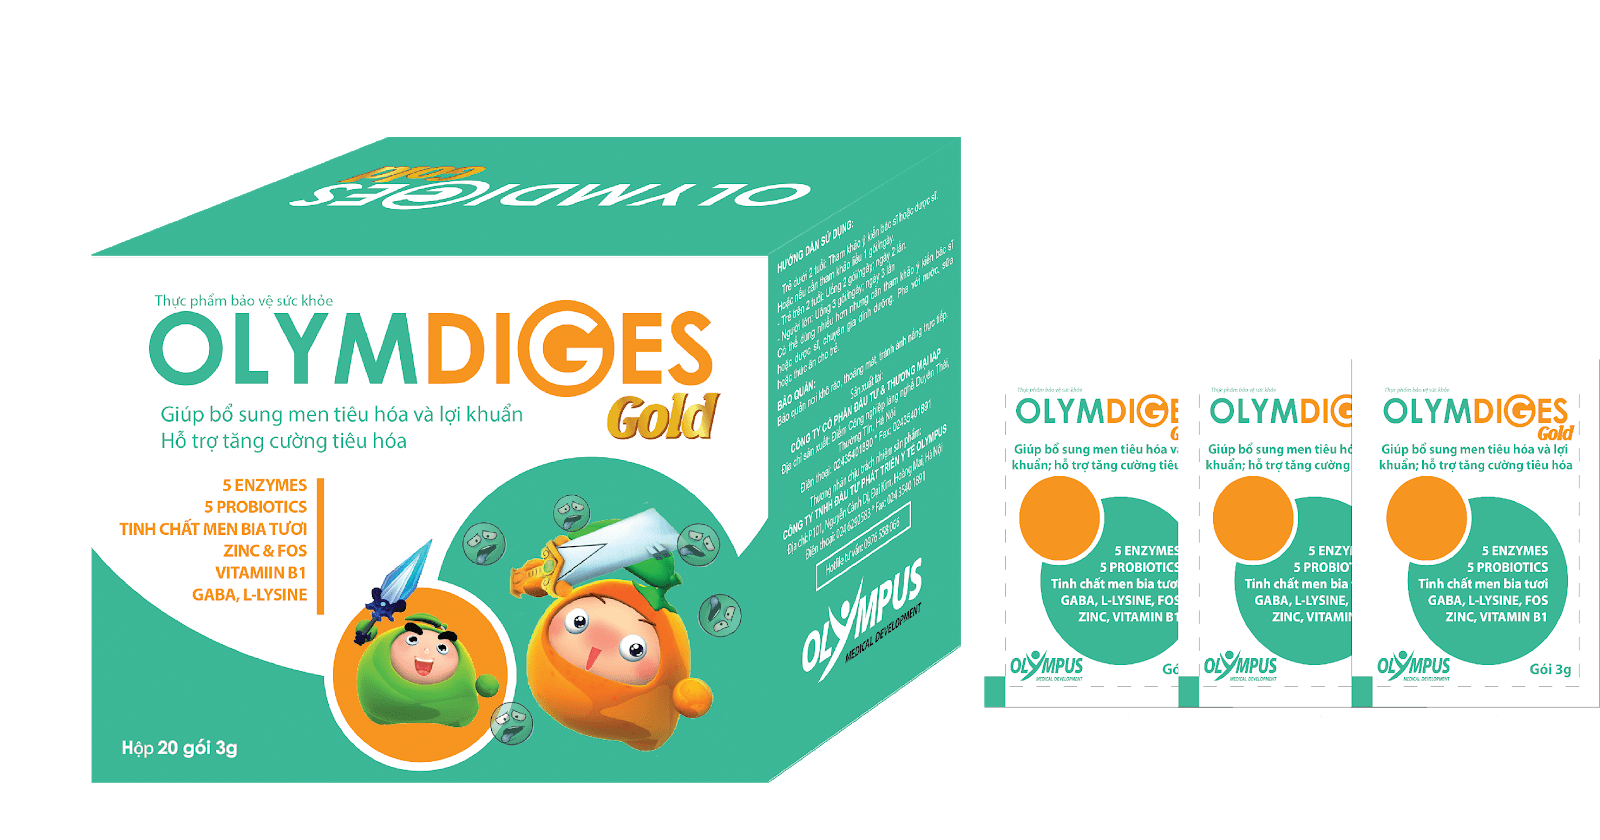 Cốm Olymdiges là sản phẩm hỗ trợ tăng cường tiêu hóa dành cho trẻ